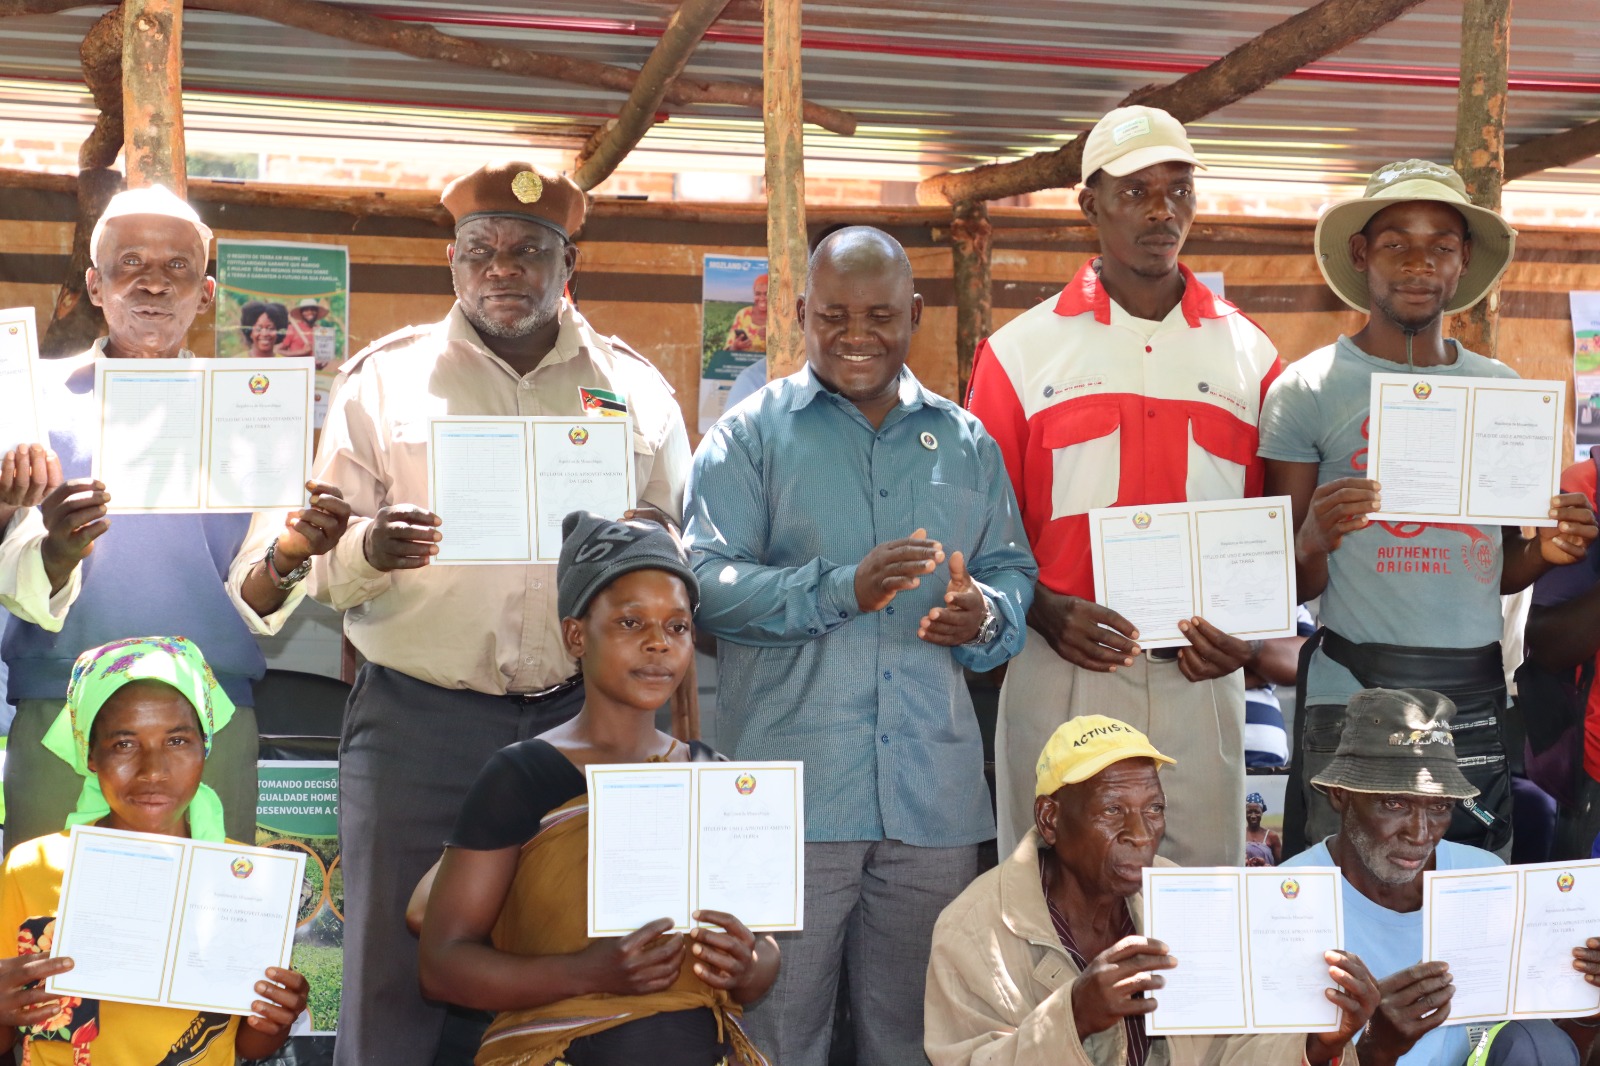 Residentes de Mossurizi, Província de Manica, recebem Títulos de DUAT's no âmbito do Projecto de Administração de Terra em Moçambique – Mozland (Terra Segura)